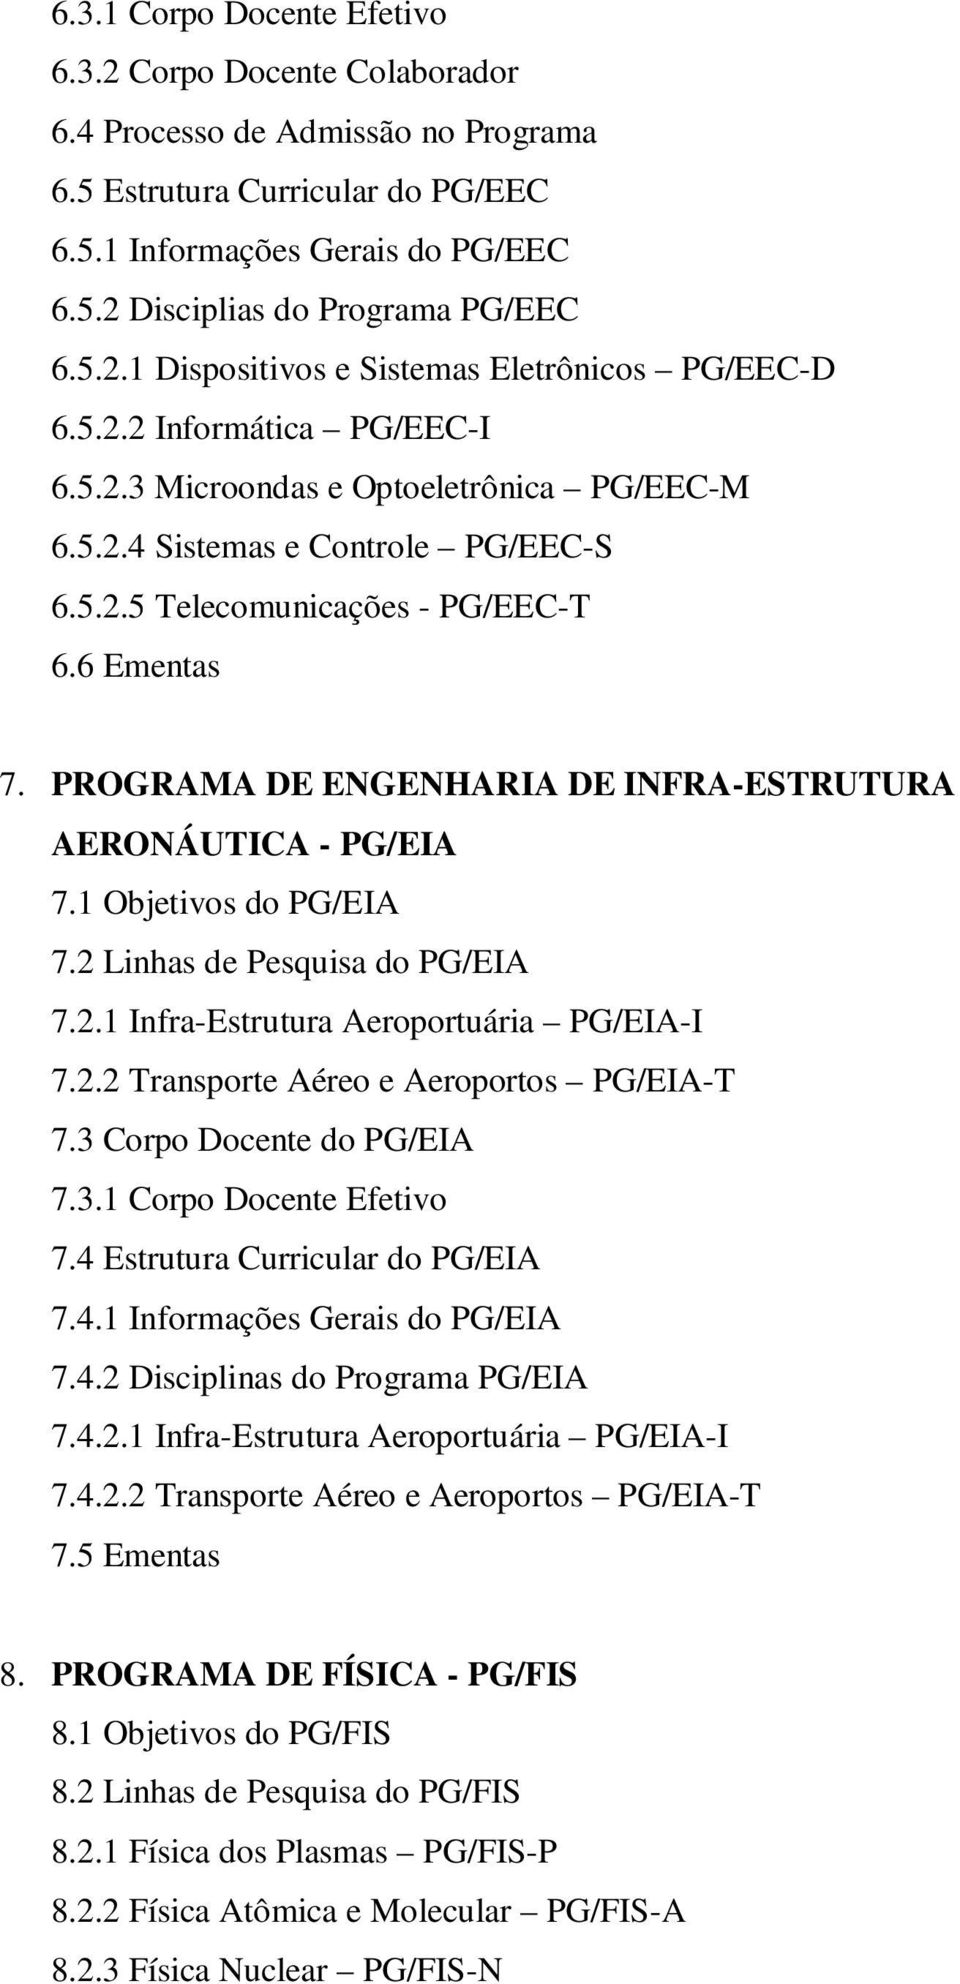 6 Ementas 7. PROGRAMA DE ENGENHARIA DE INFRA-ESTRUTURA AERONÁUTICA - PG/EIA 7.1 Objetivos do PG/EIA 7.2 Linhas de Pesquisa do PG/EIA 7.2.1 Infra-Estrutura Aeroportuária PG/EIA-I 7.2.2 Transporte Aéreo e Aeroportos PG/EIA-T 7.